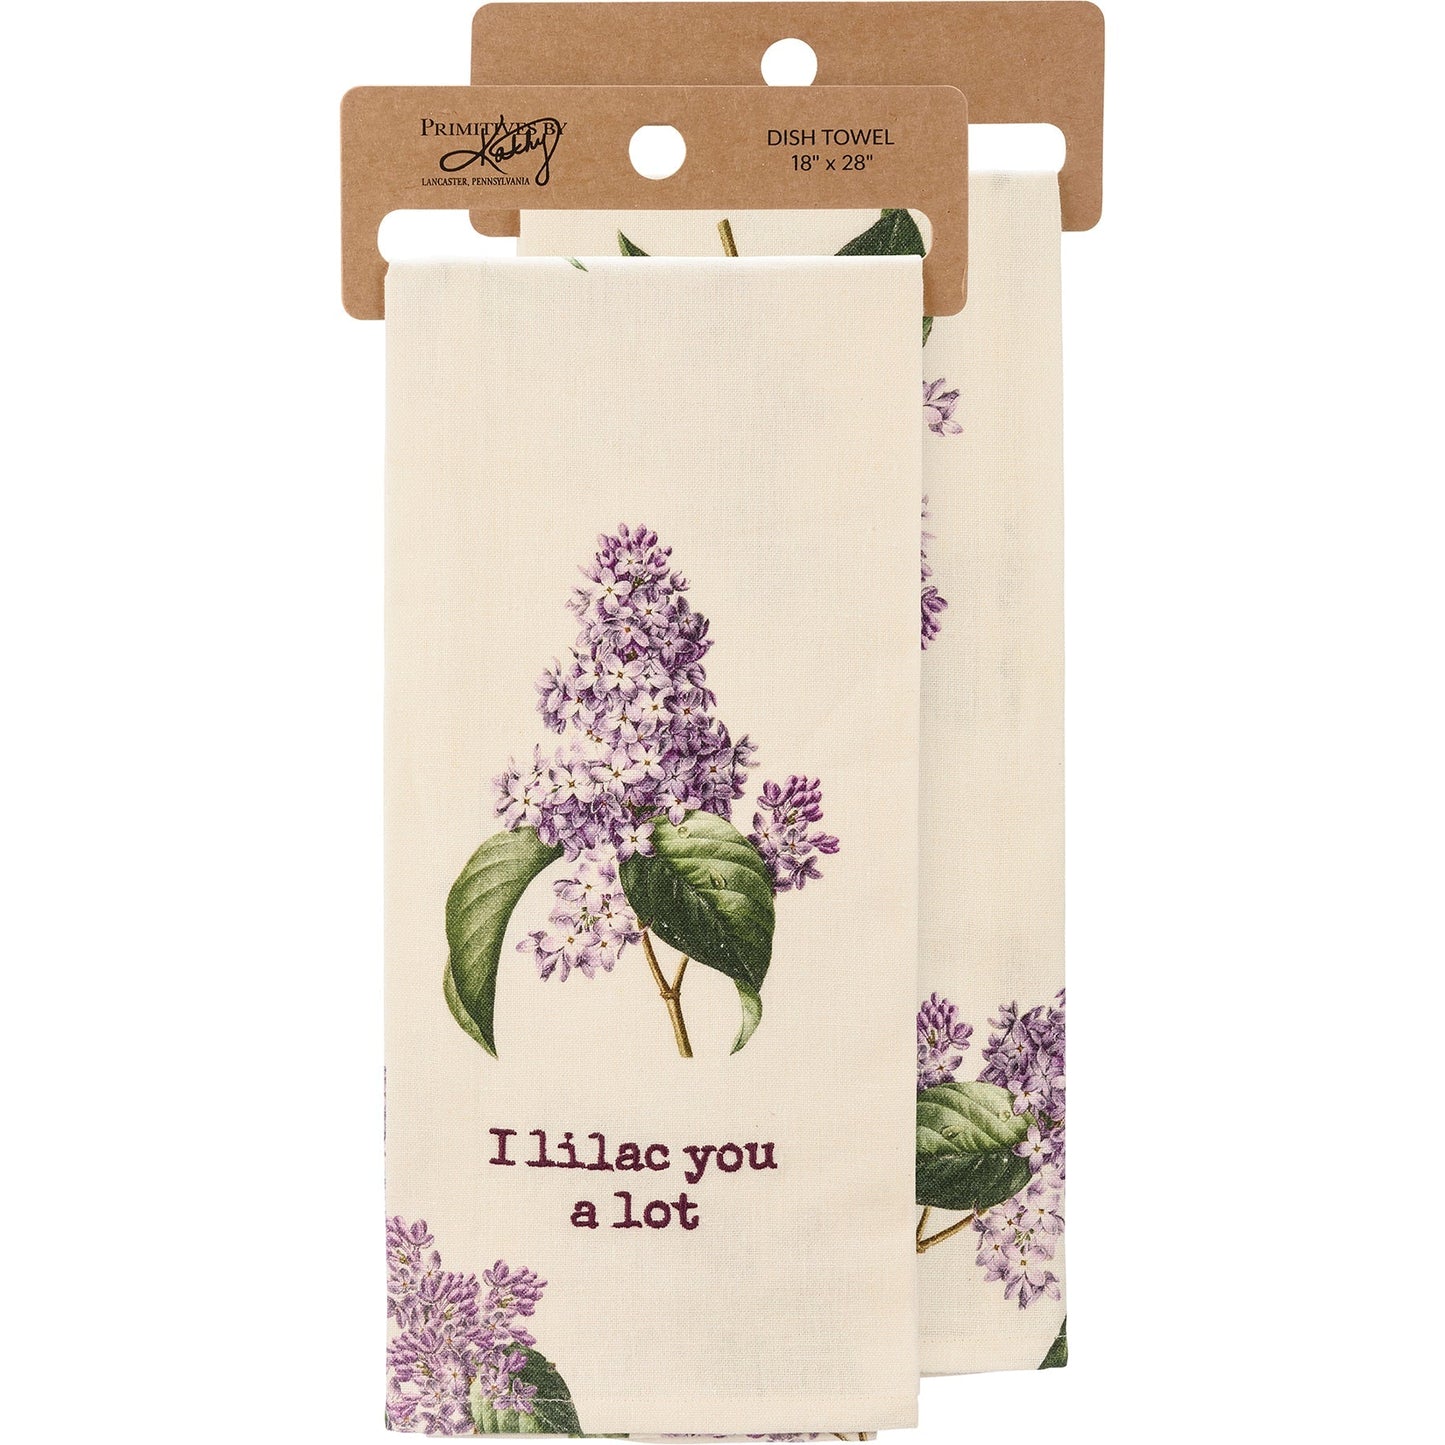 I Lilac You A Lot Dish Cloth Towel | Cotten Linen Novelty Tea Towel | Cute Kitchen Hand Towel | 18" x 28"